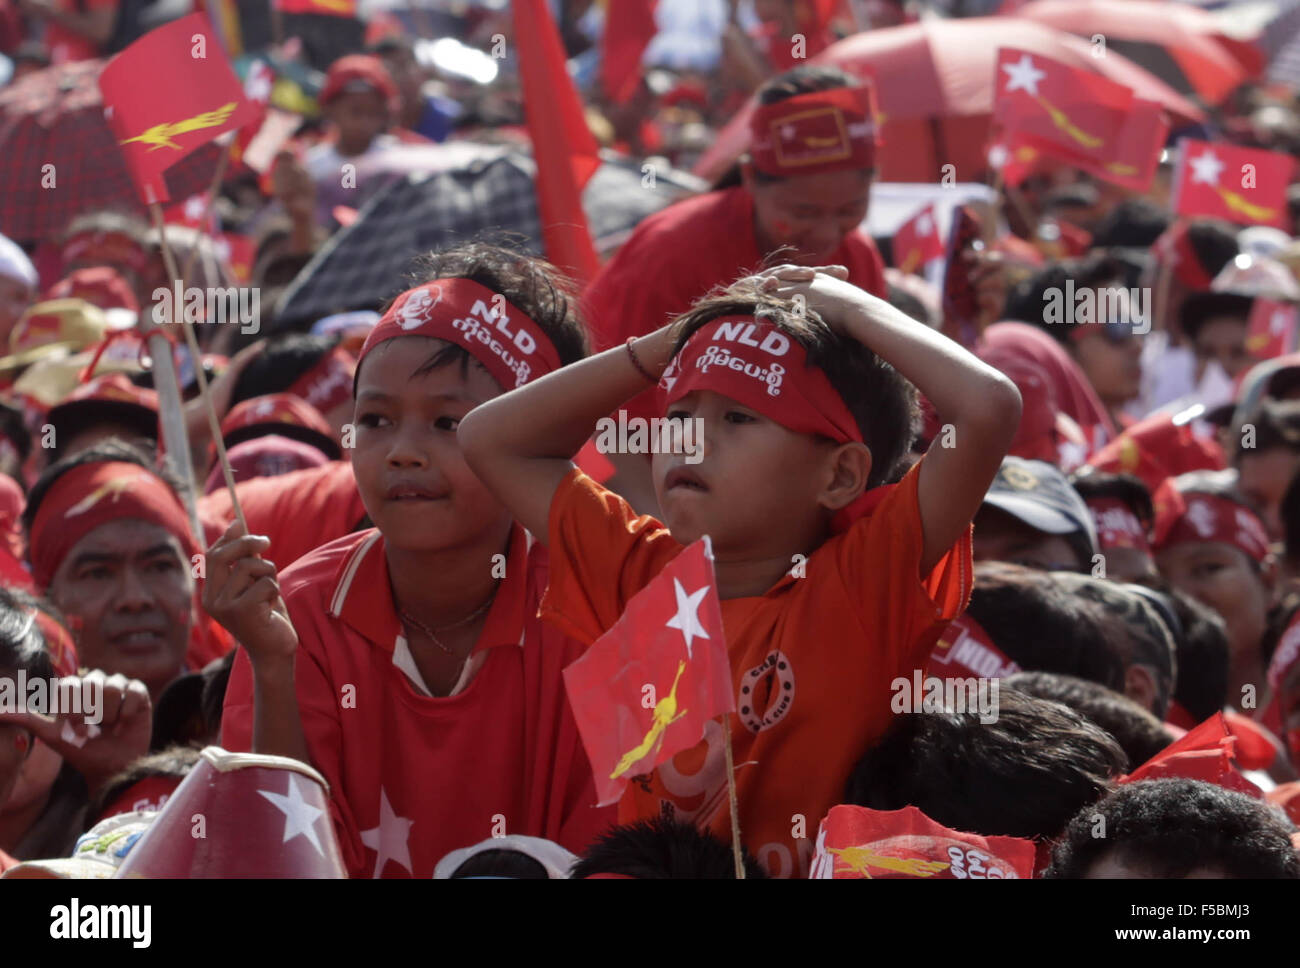 Yangon, Myanmar. 1 Nov, 2015. I bambini che frequentano un rally come Aung San Suu Kyi, presidente della Lega nazionale per la democrazia (NLD) offre una campagna discorso a Yangon, Myanmar, nov. 1, 2015. Campaignings dai principali partiti politici in Myanmar intensificato la domenica come nov. 8 elezione generale è entrato in sette giorni di conto alla rovescia. Credito: U Aung/Xinhua/Alamy Live News Foto Stock